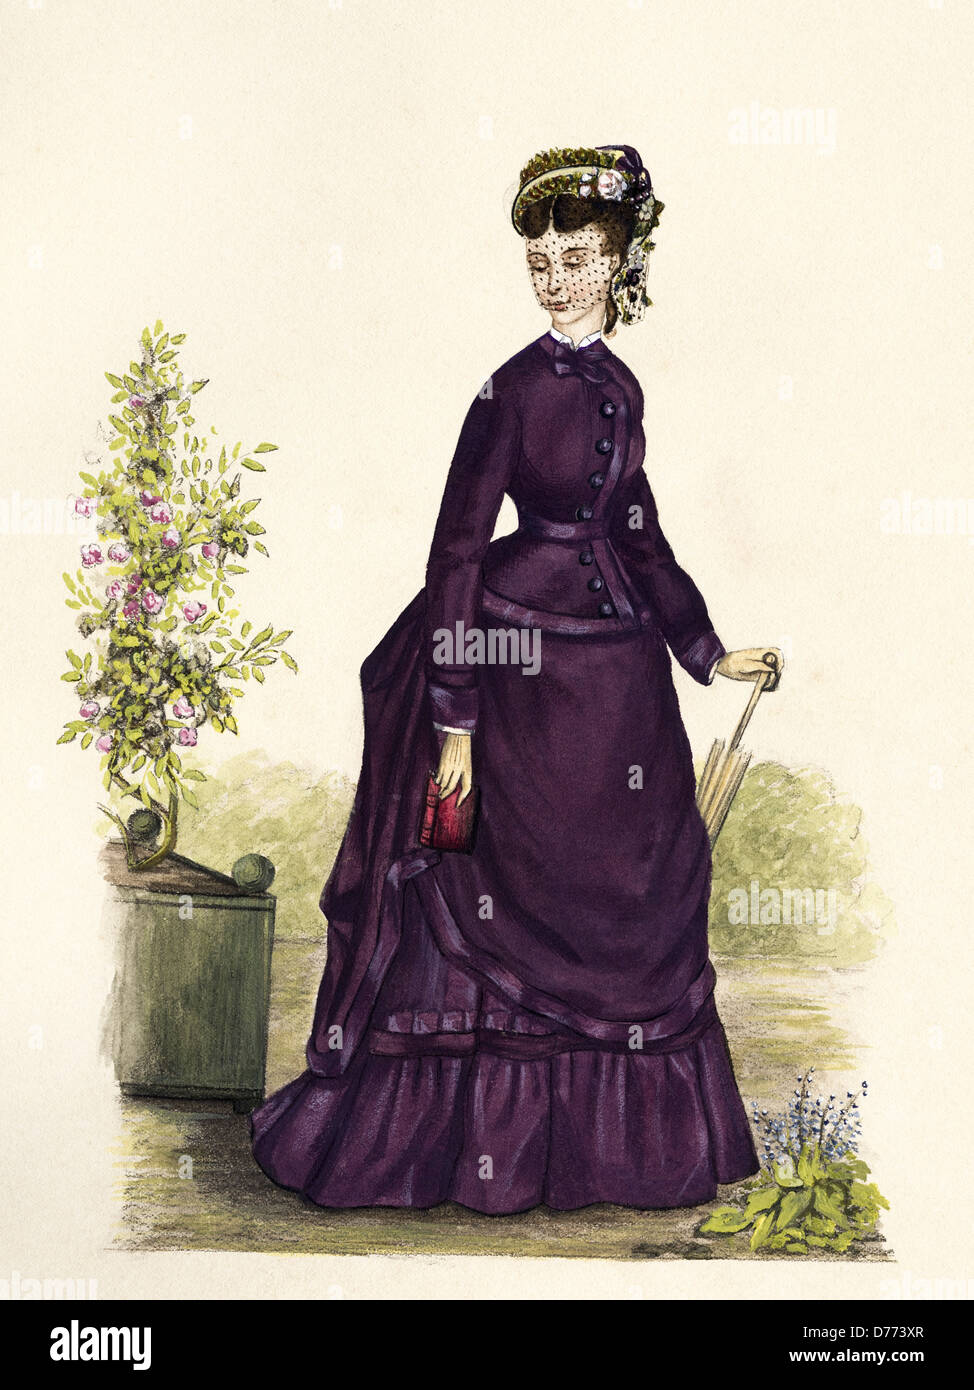 Mode français du XIXe siècle de l'époque victorienne datant de 1873. Artiste de peinture d'aquarelle original inconnu Banque D'Images